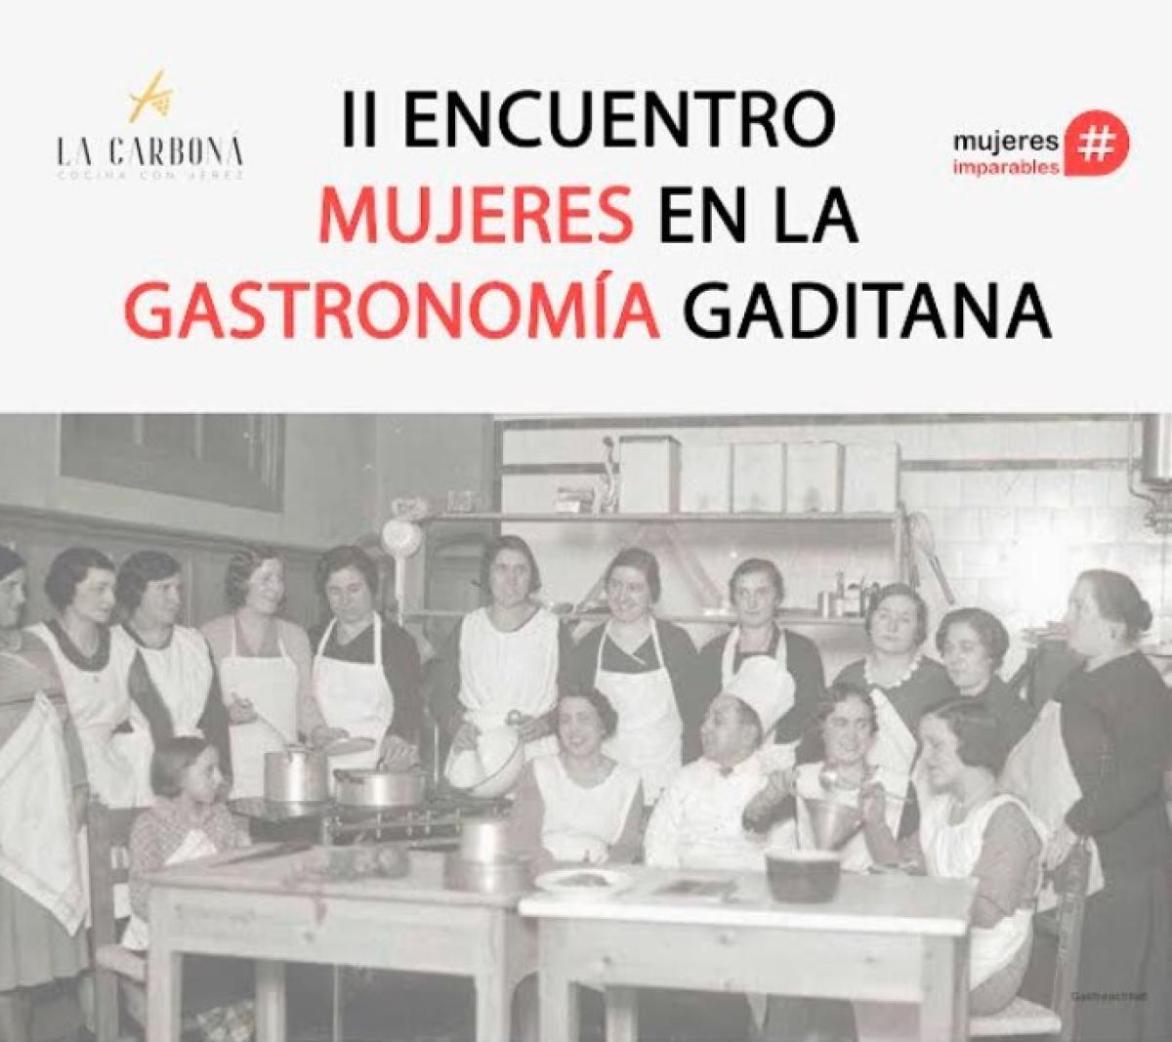 La Carboná y Mujeres Imparables organizan el II Encuentro de Mujeres en la Gastronomía Gaditana